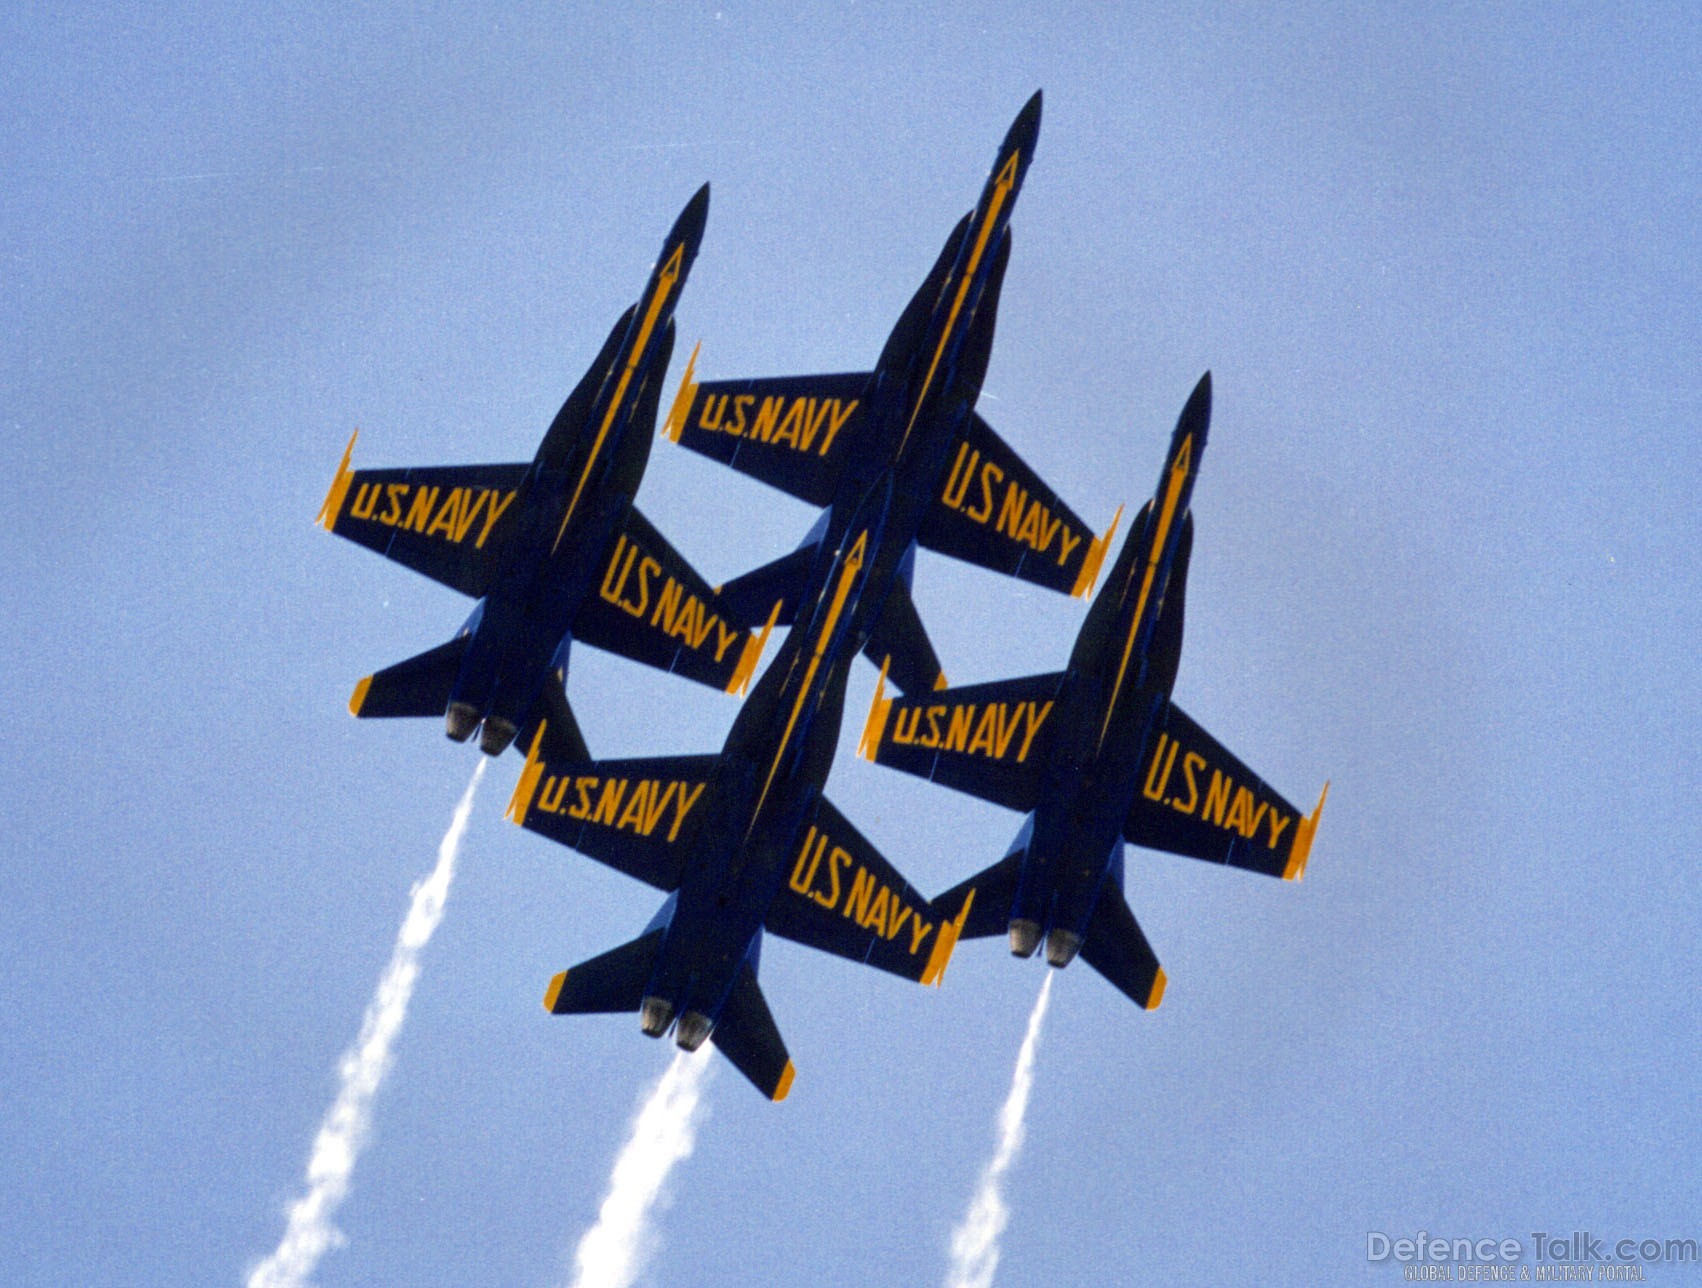 Blue Angels - US navy's Flight Demonstration Team